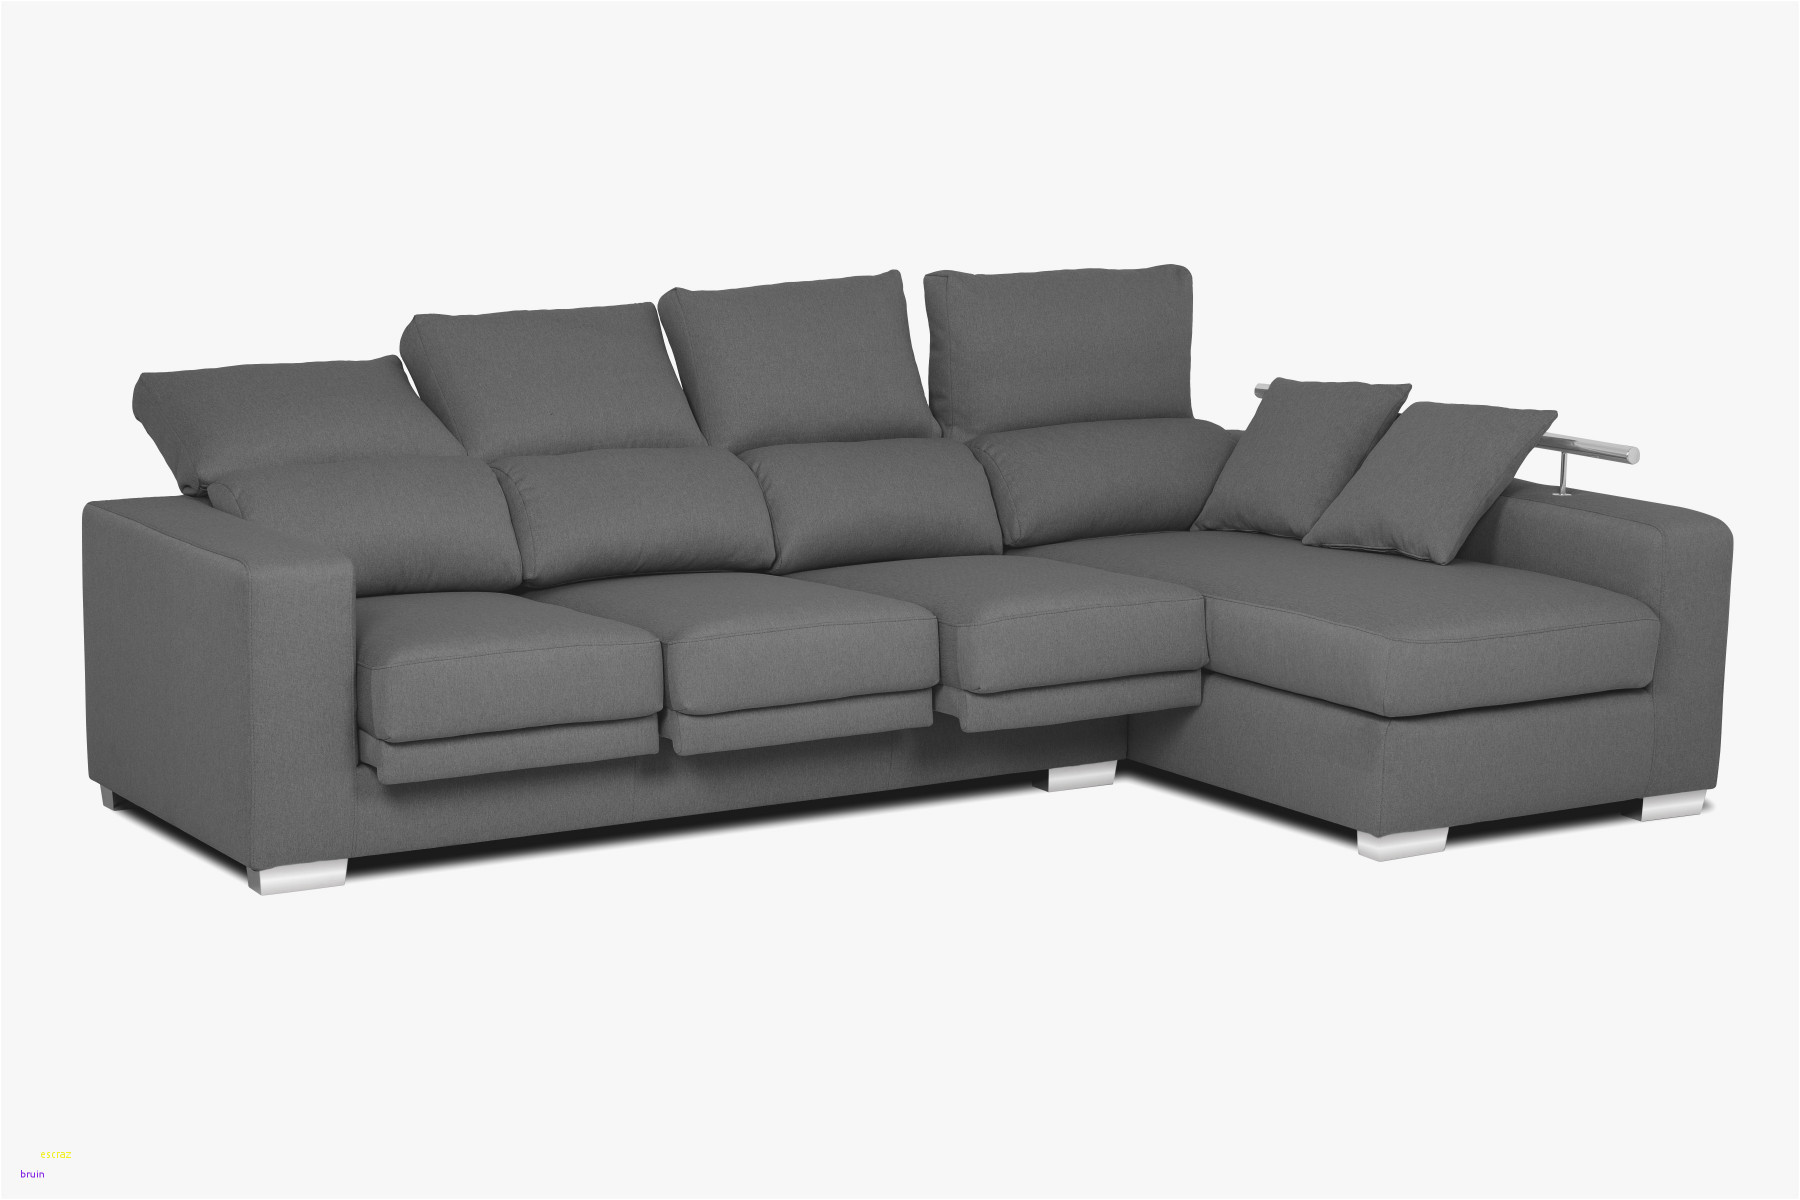 comprar sofas baratos terrific guay mejor 25 inspirador sofa cama conforama concepto decorar casas